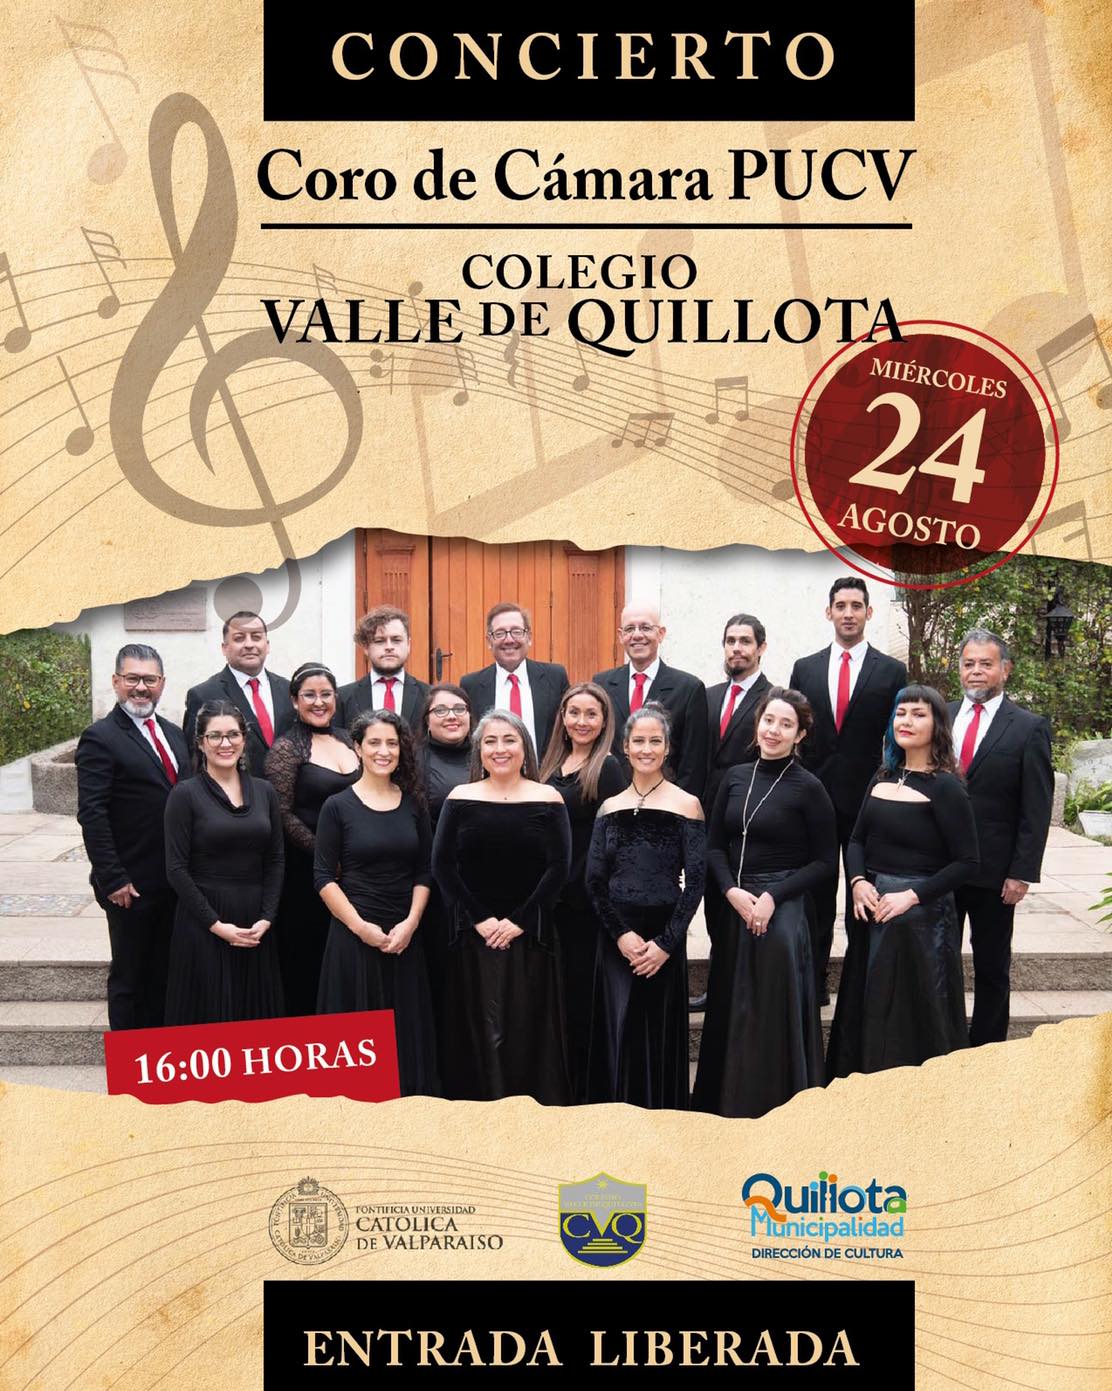 Coro de Cámara PUCV se presentará el miércoles 24 de agosto en Quillota